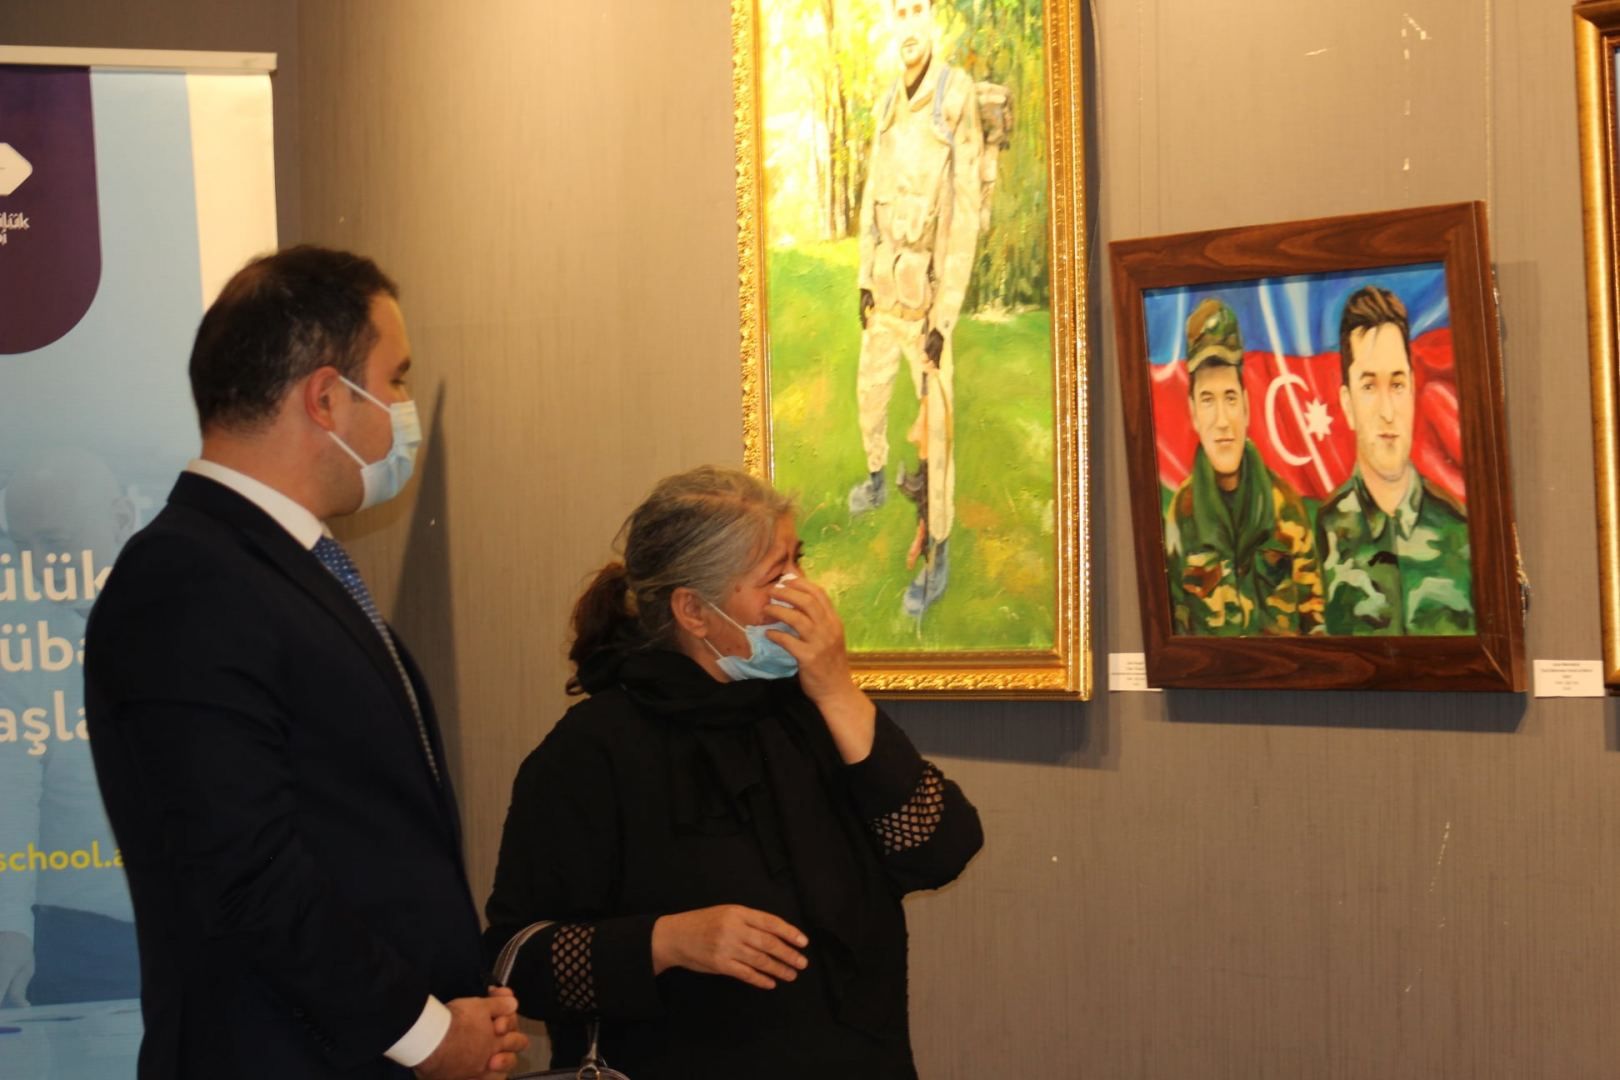 Gemälde und Skulpturen zum Gedenken an die aserbaidschanische Helden des 44-tägigen Karabach Krieges